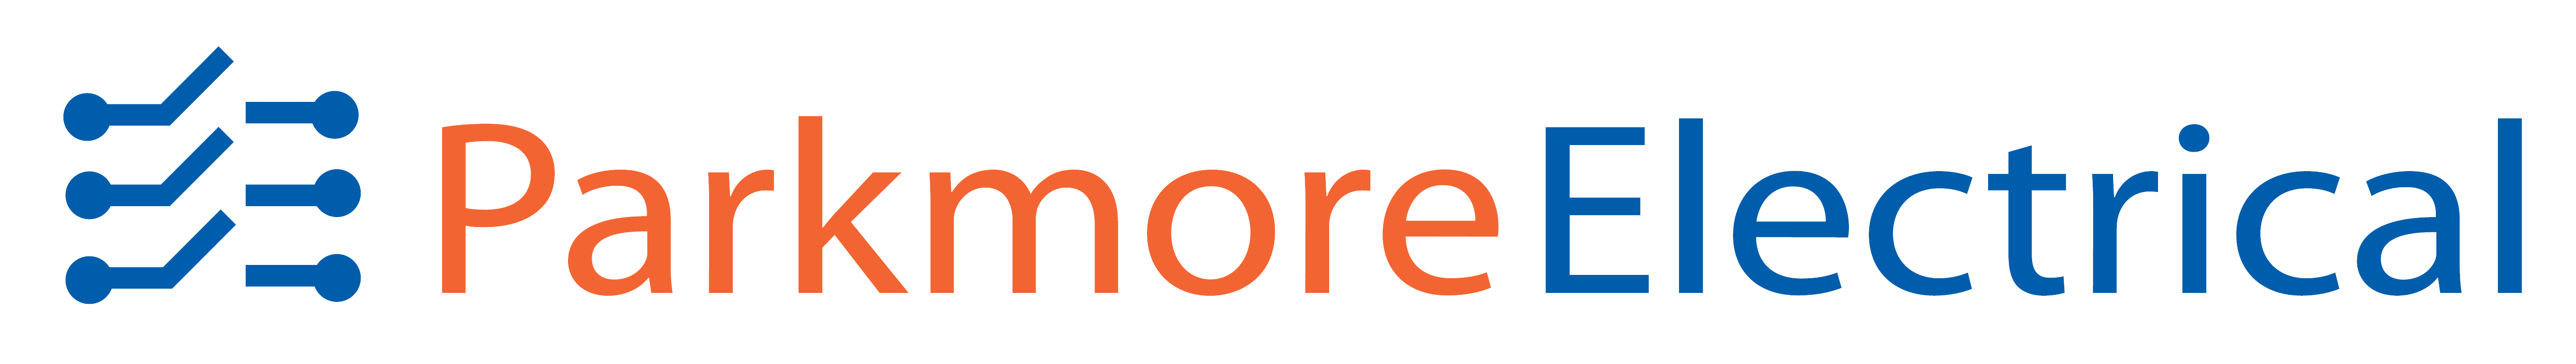 Parkmore logo